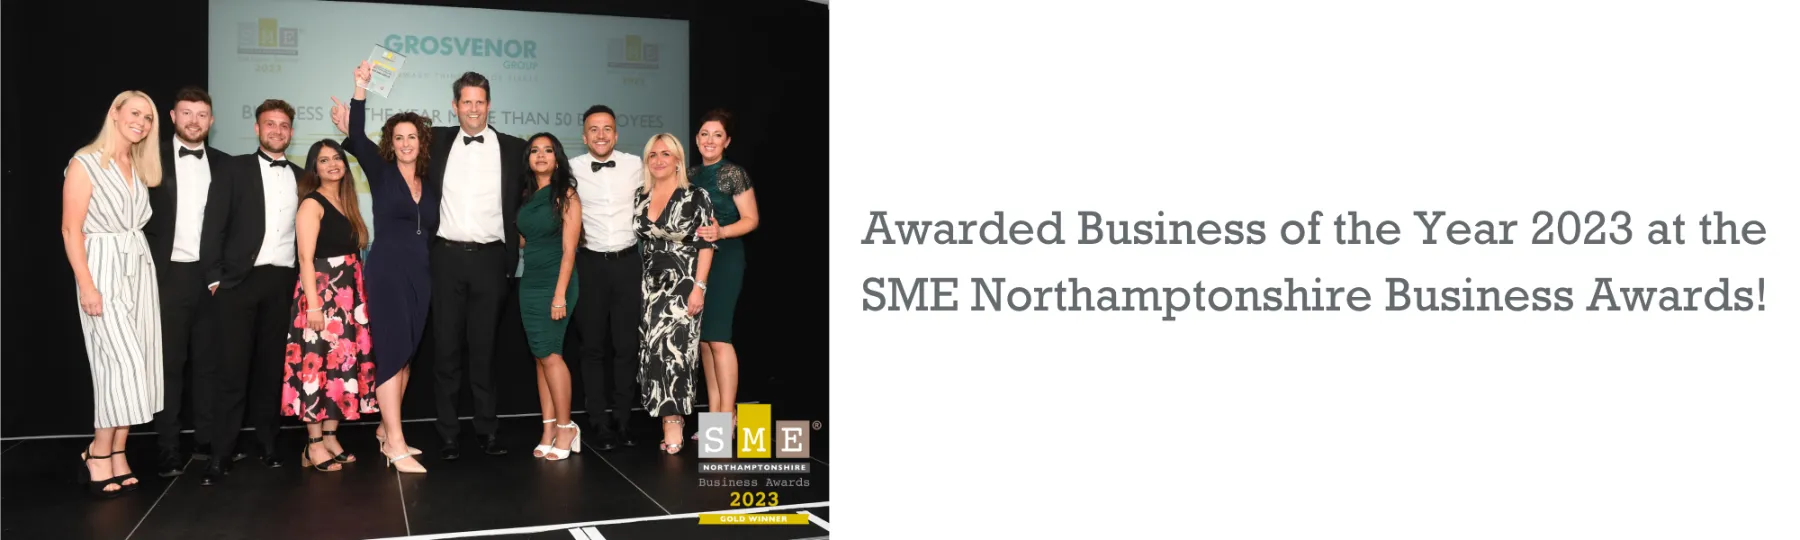 SME Business Awards Winner 1